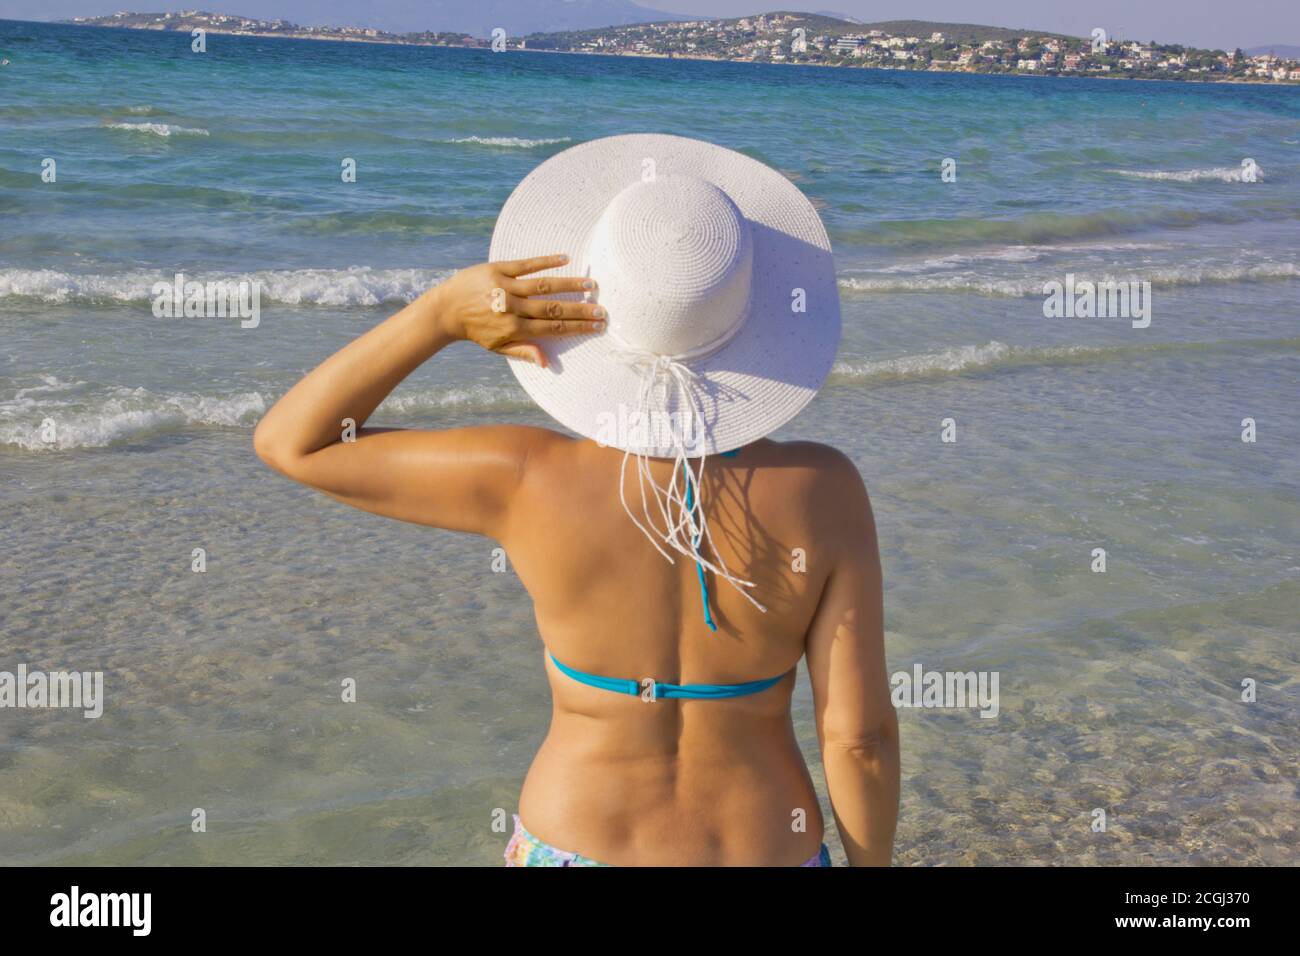 beautiful young woman in bikini on the beach Stock Photo